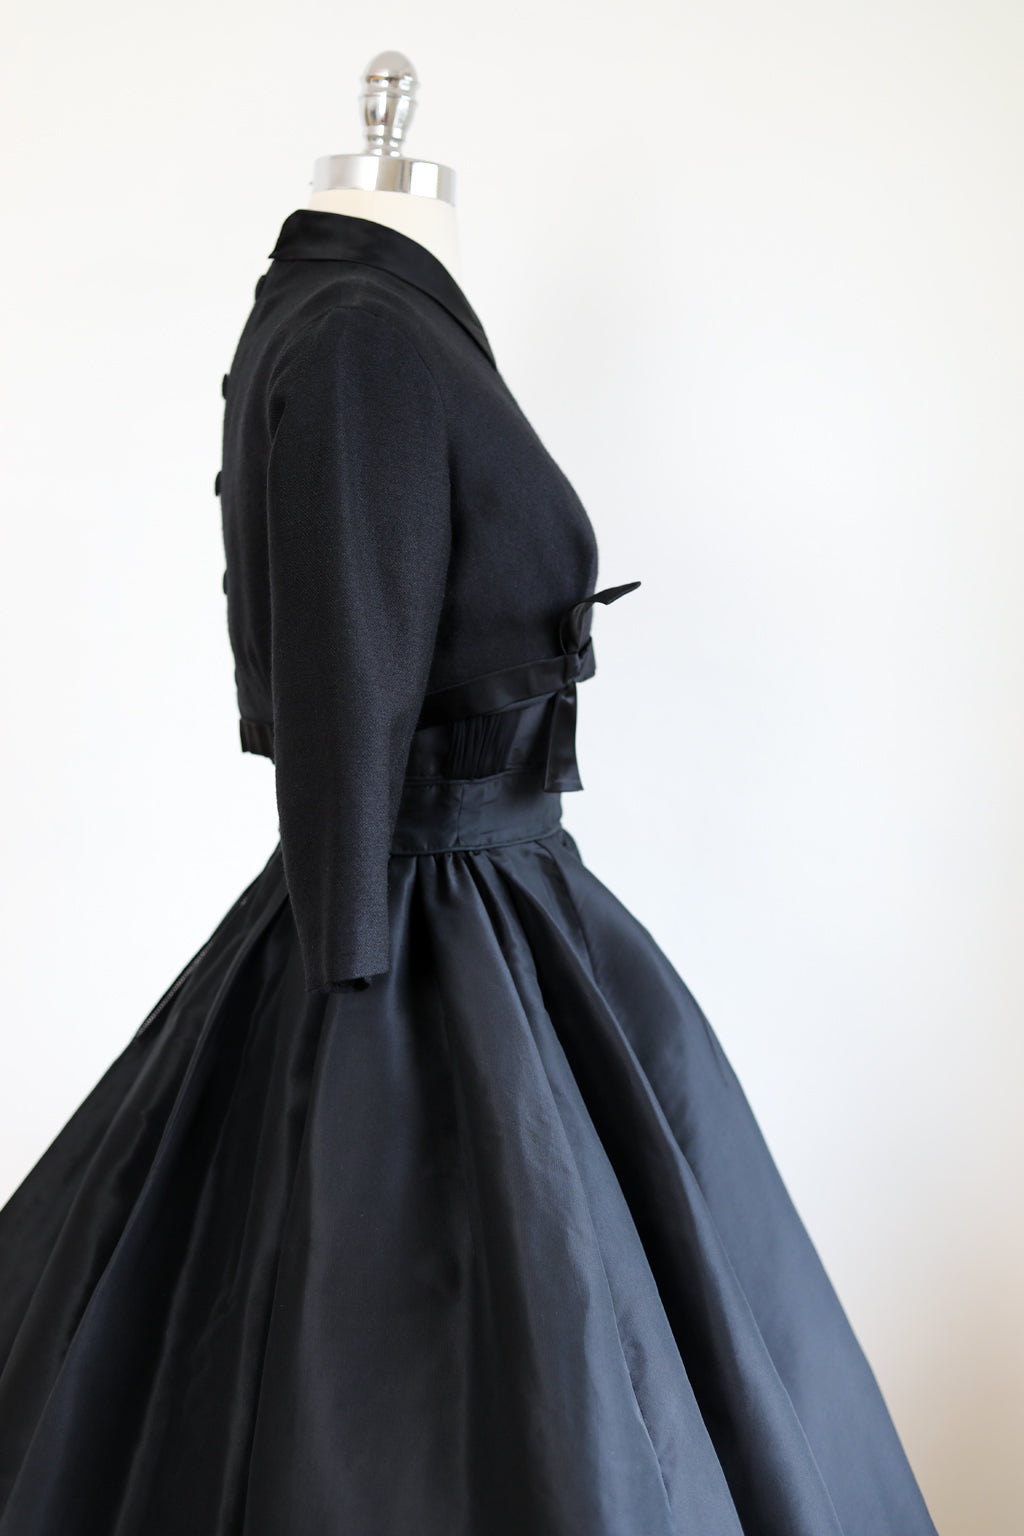 Vogue 2523 PIERRE BALMAIN Evening Gown w Draped Cape & Front Slit Sz 14  UNCUT | eBay